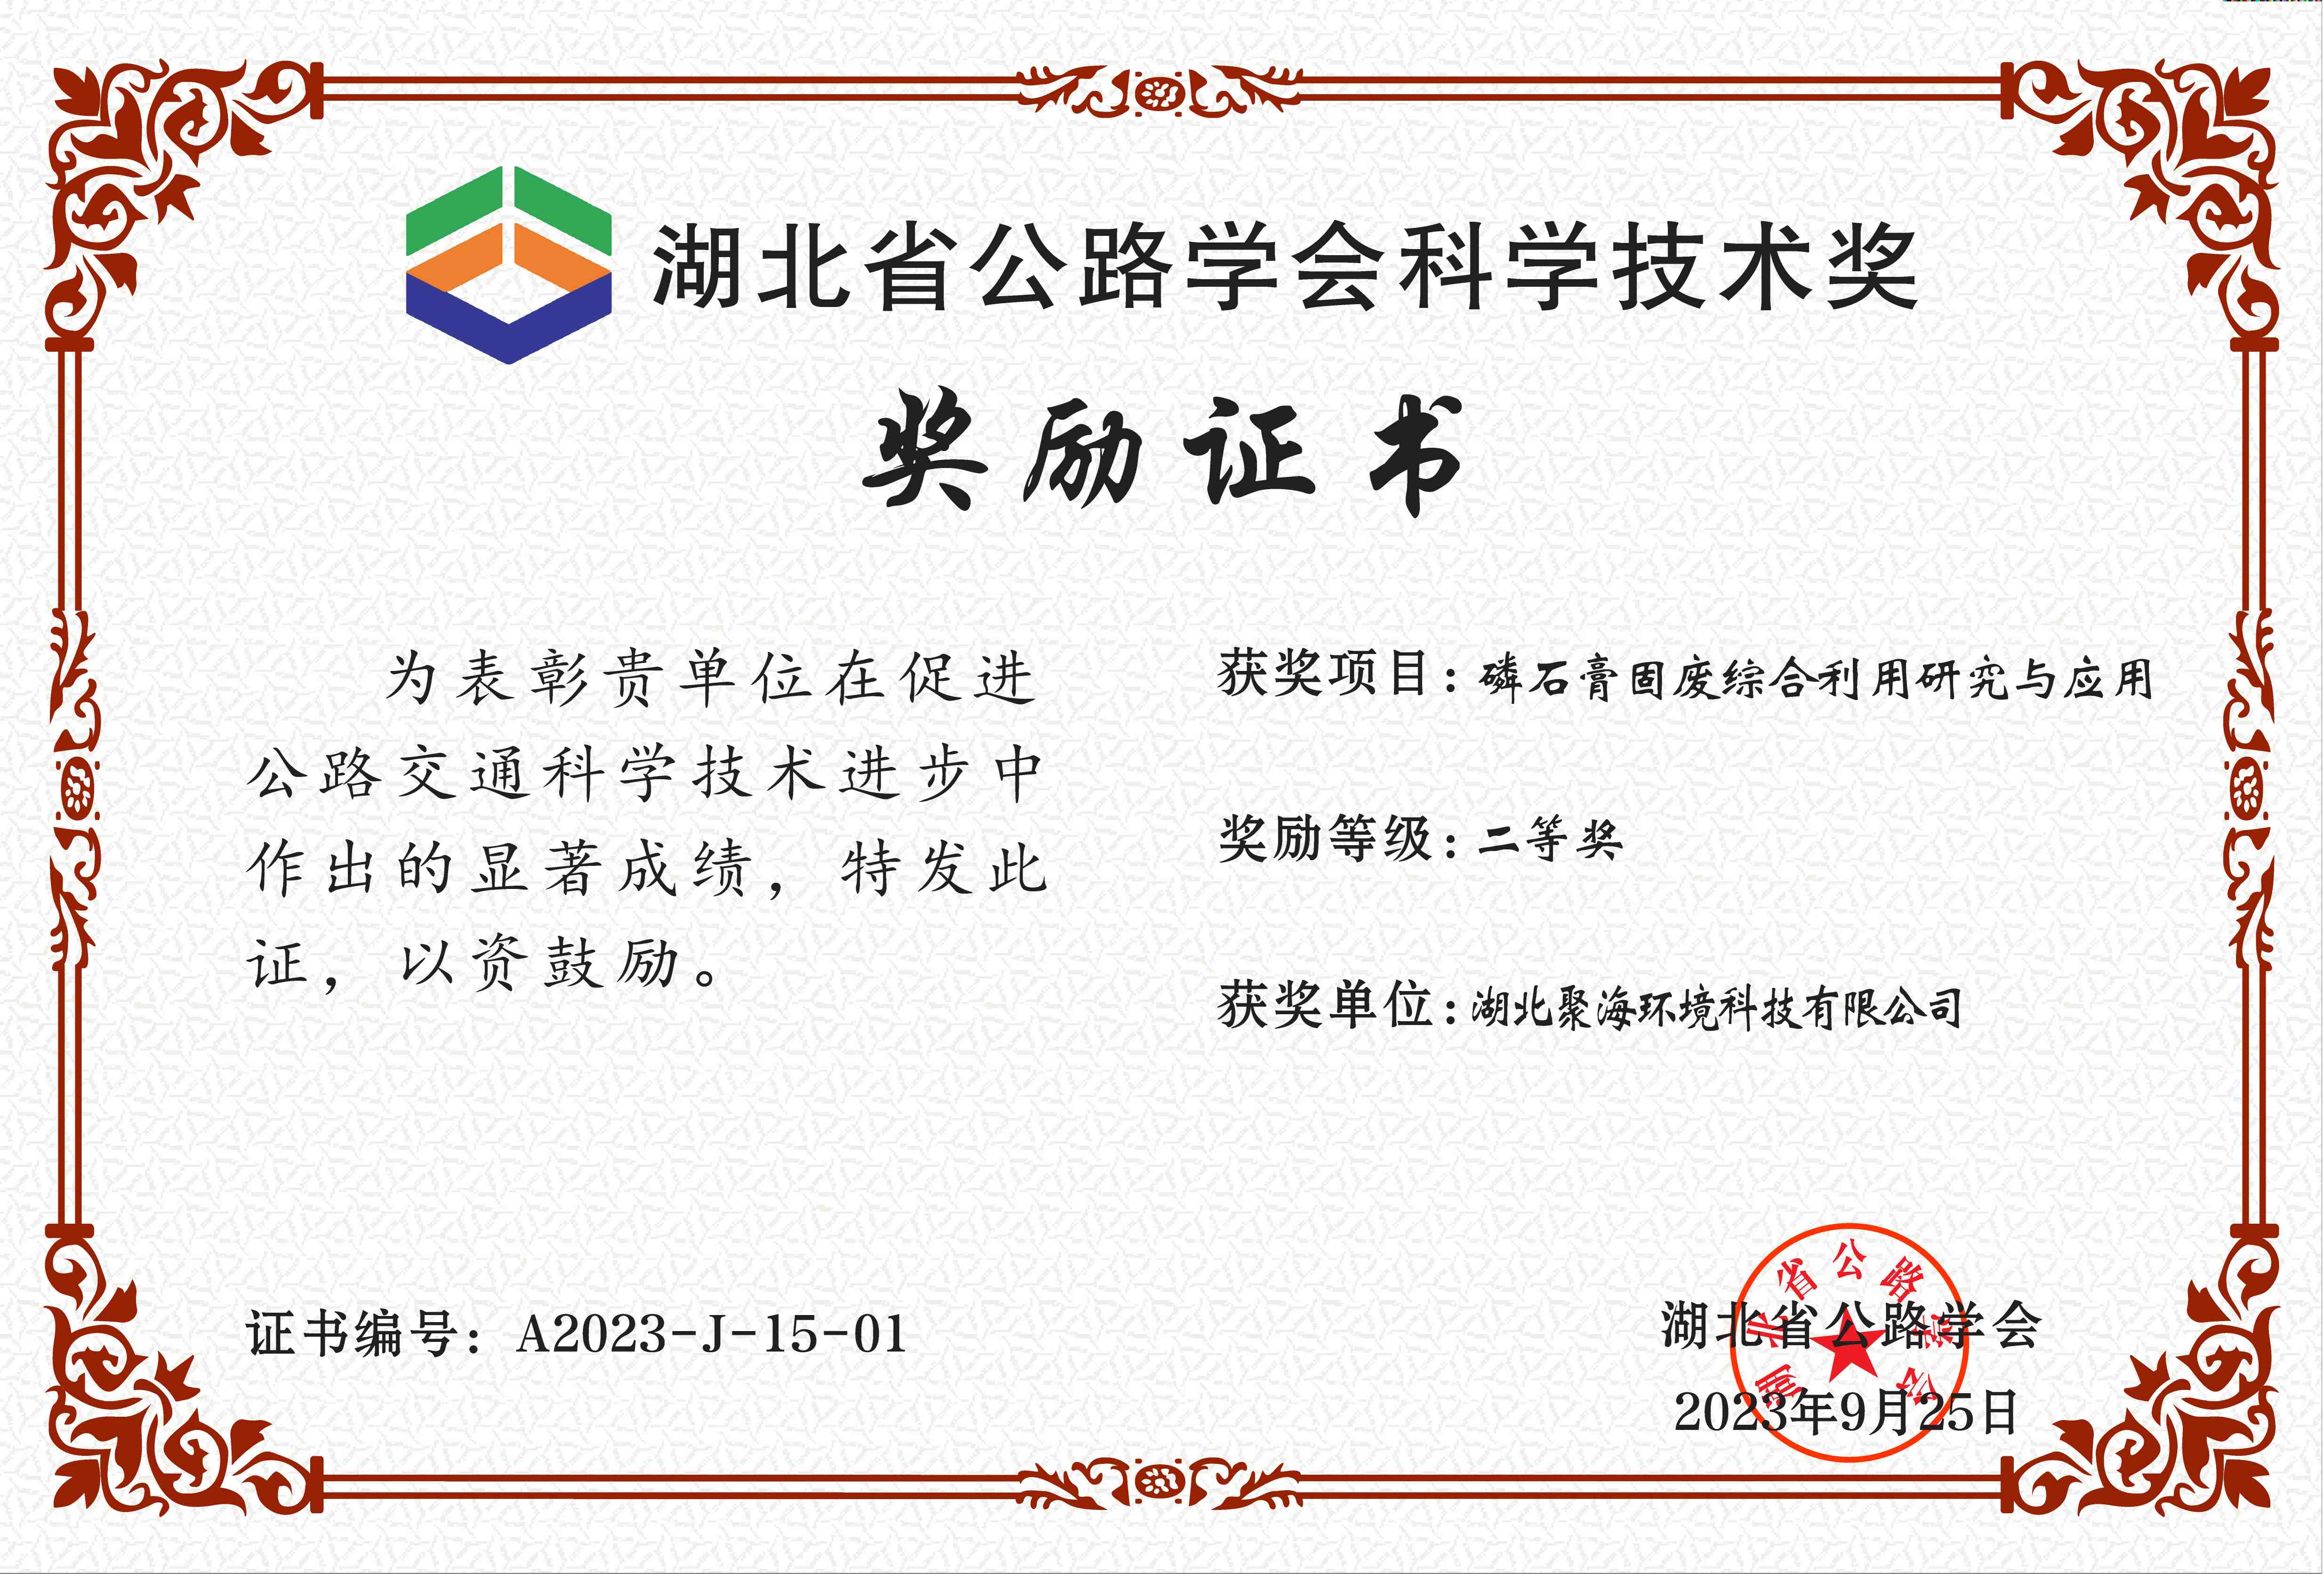 湖北省公路学会“科学技术奖”